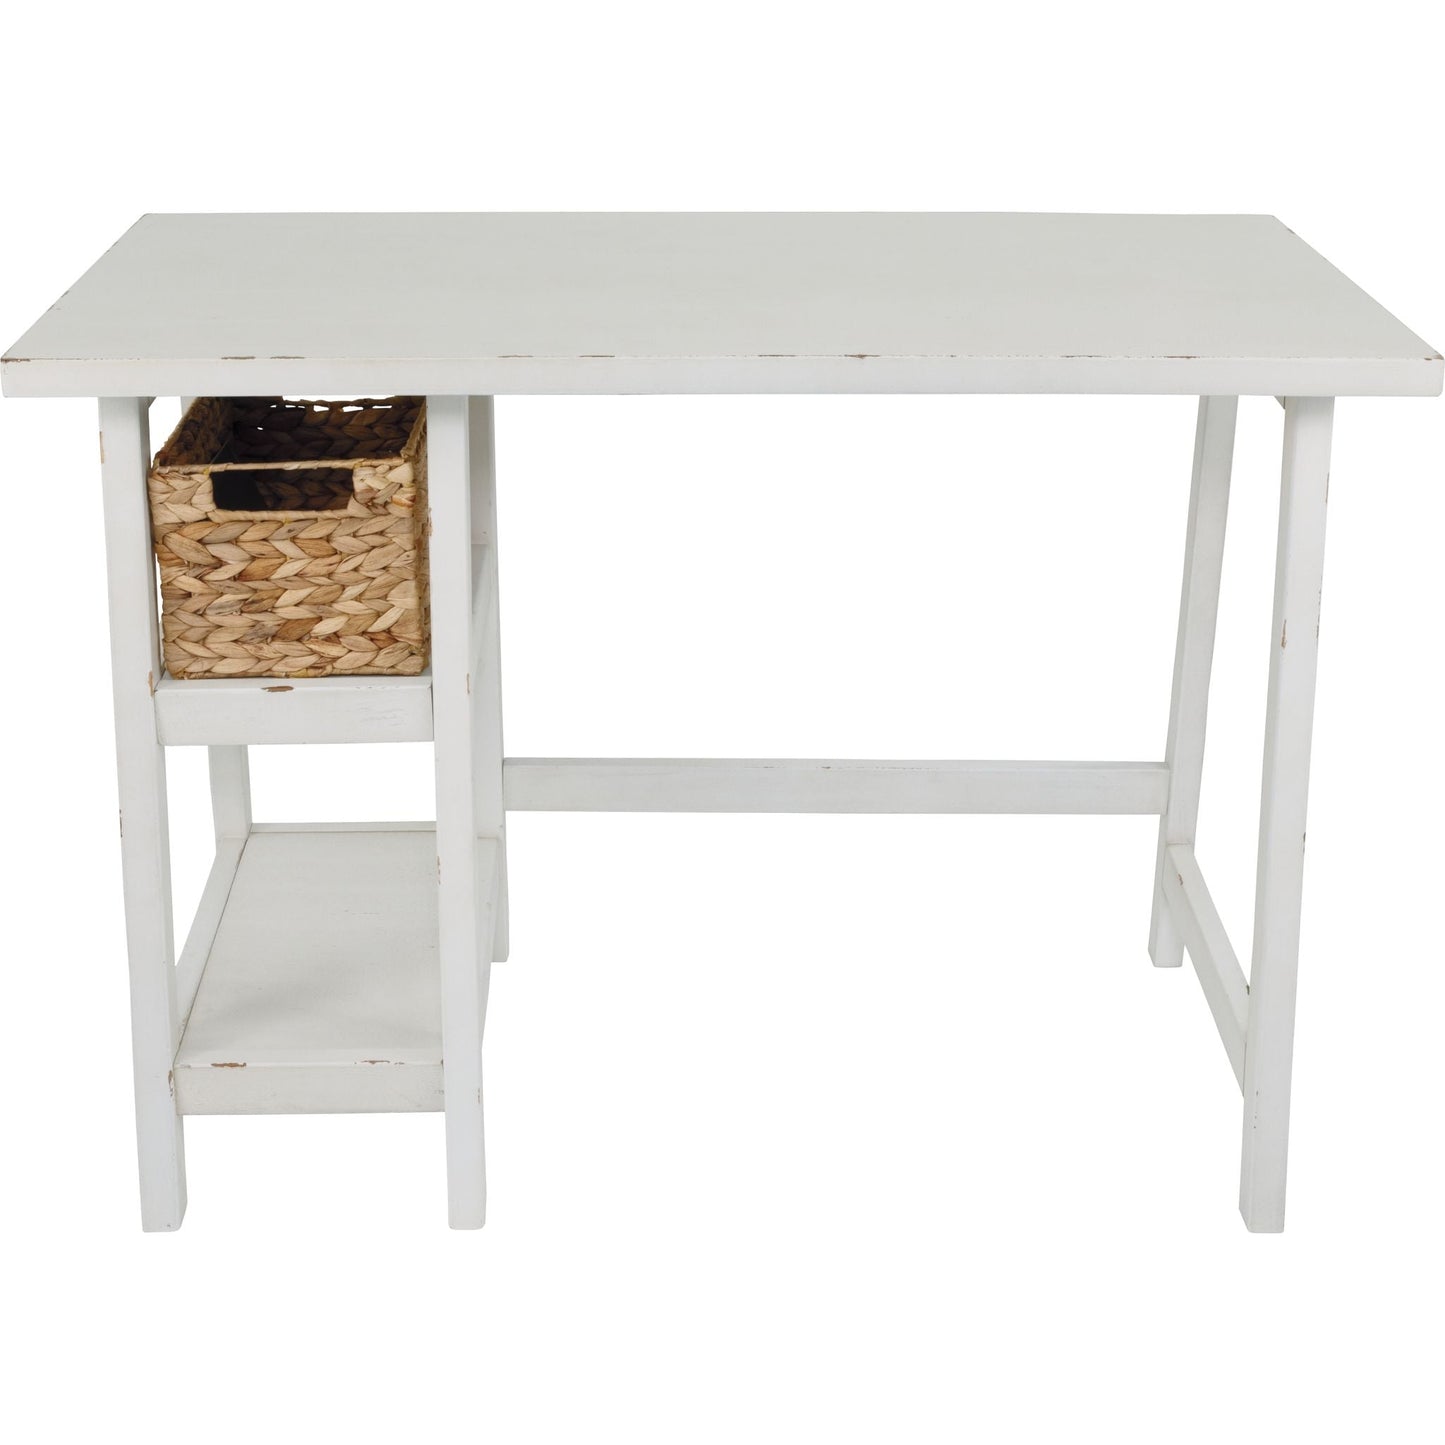 Mirimyn Desk - Antique White